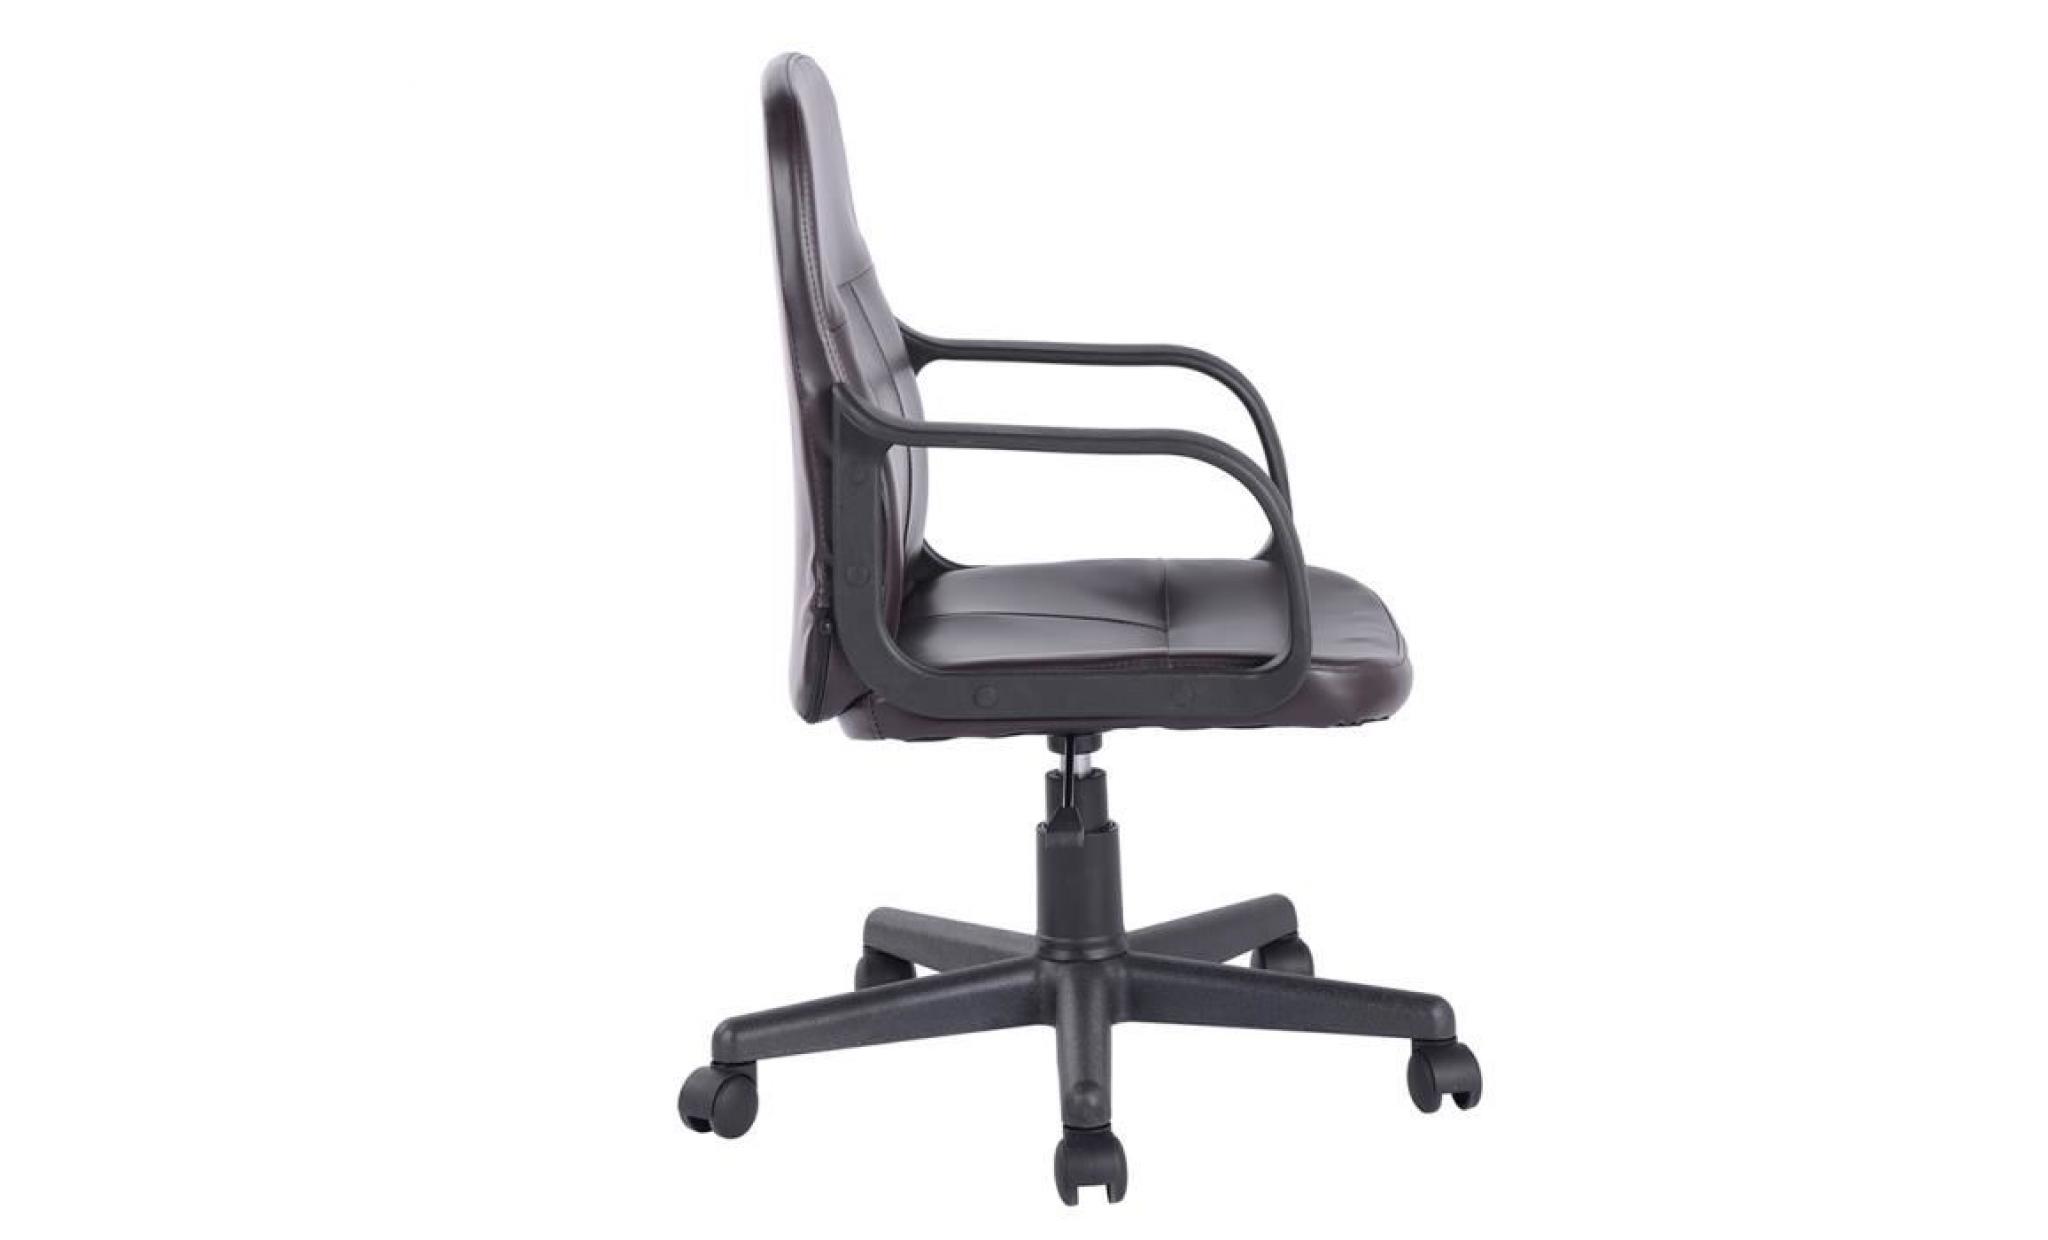 aingoo  fauteuil de bureau   simili brun   contemporain   l 45 cm x p 48.5 cm pas cher